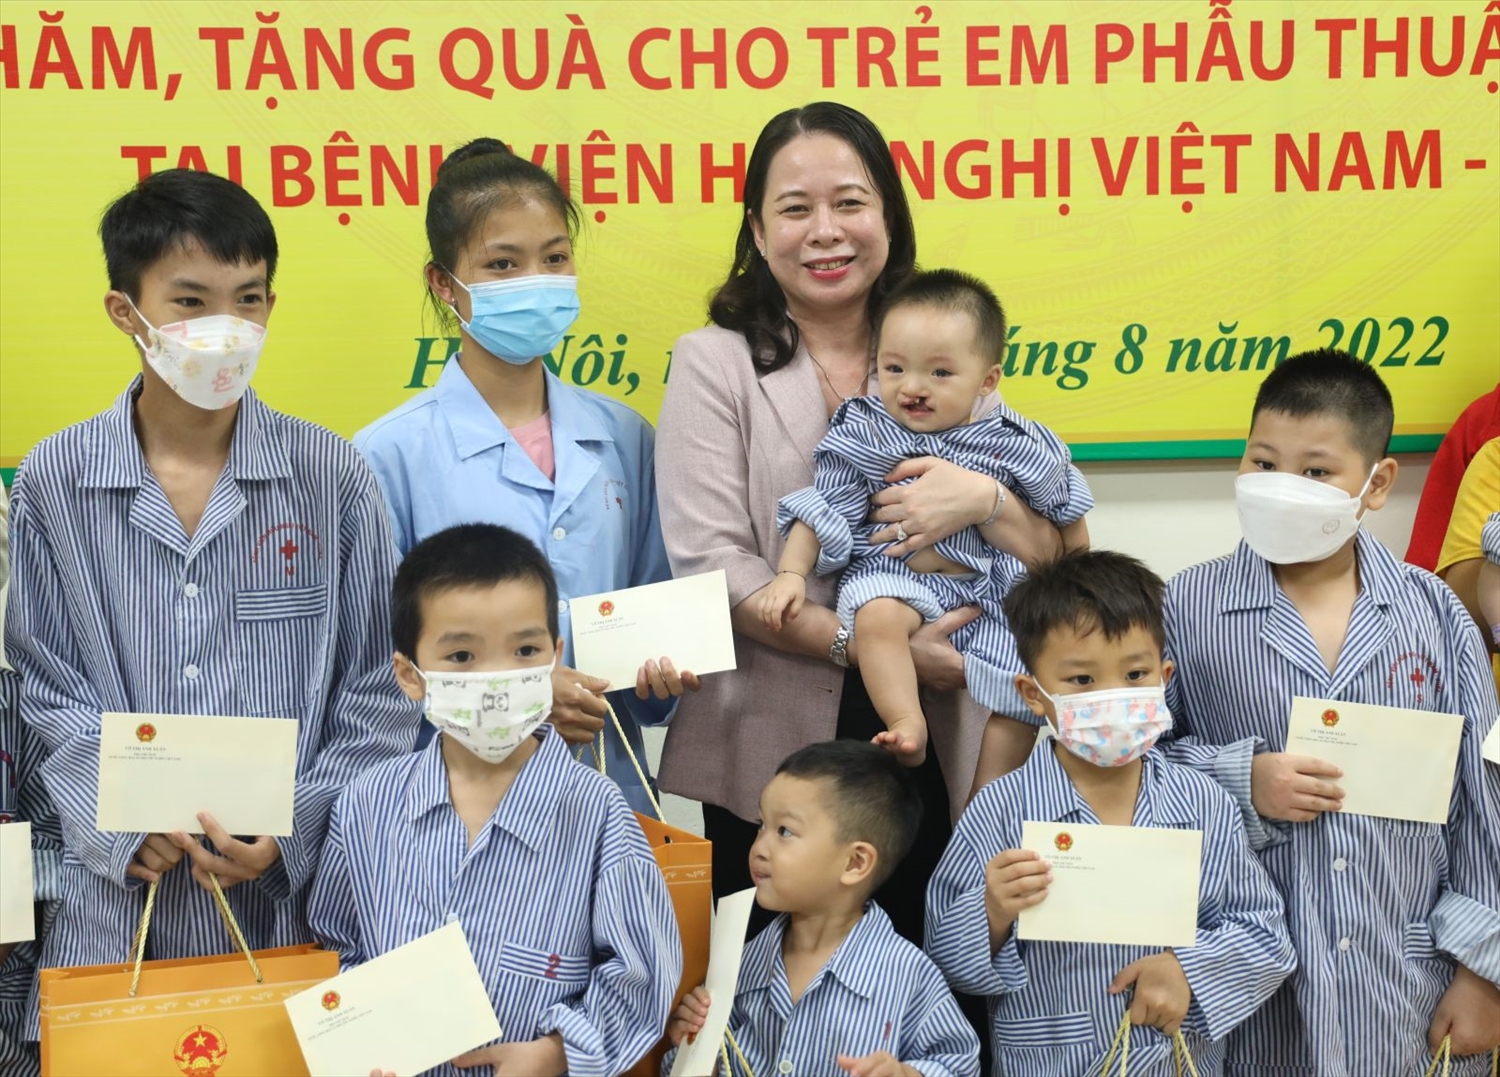 Phó Chủ tịch nước tặng quà trẻ em phẫu thuật nụ cười tại Bệnh viện Việt Nam - Cu Ba. Ảnh: VPCTN